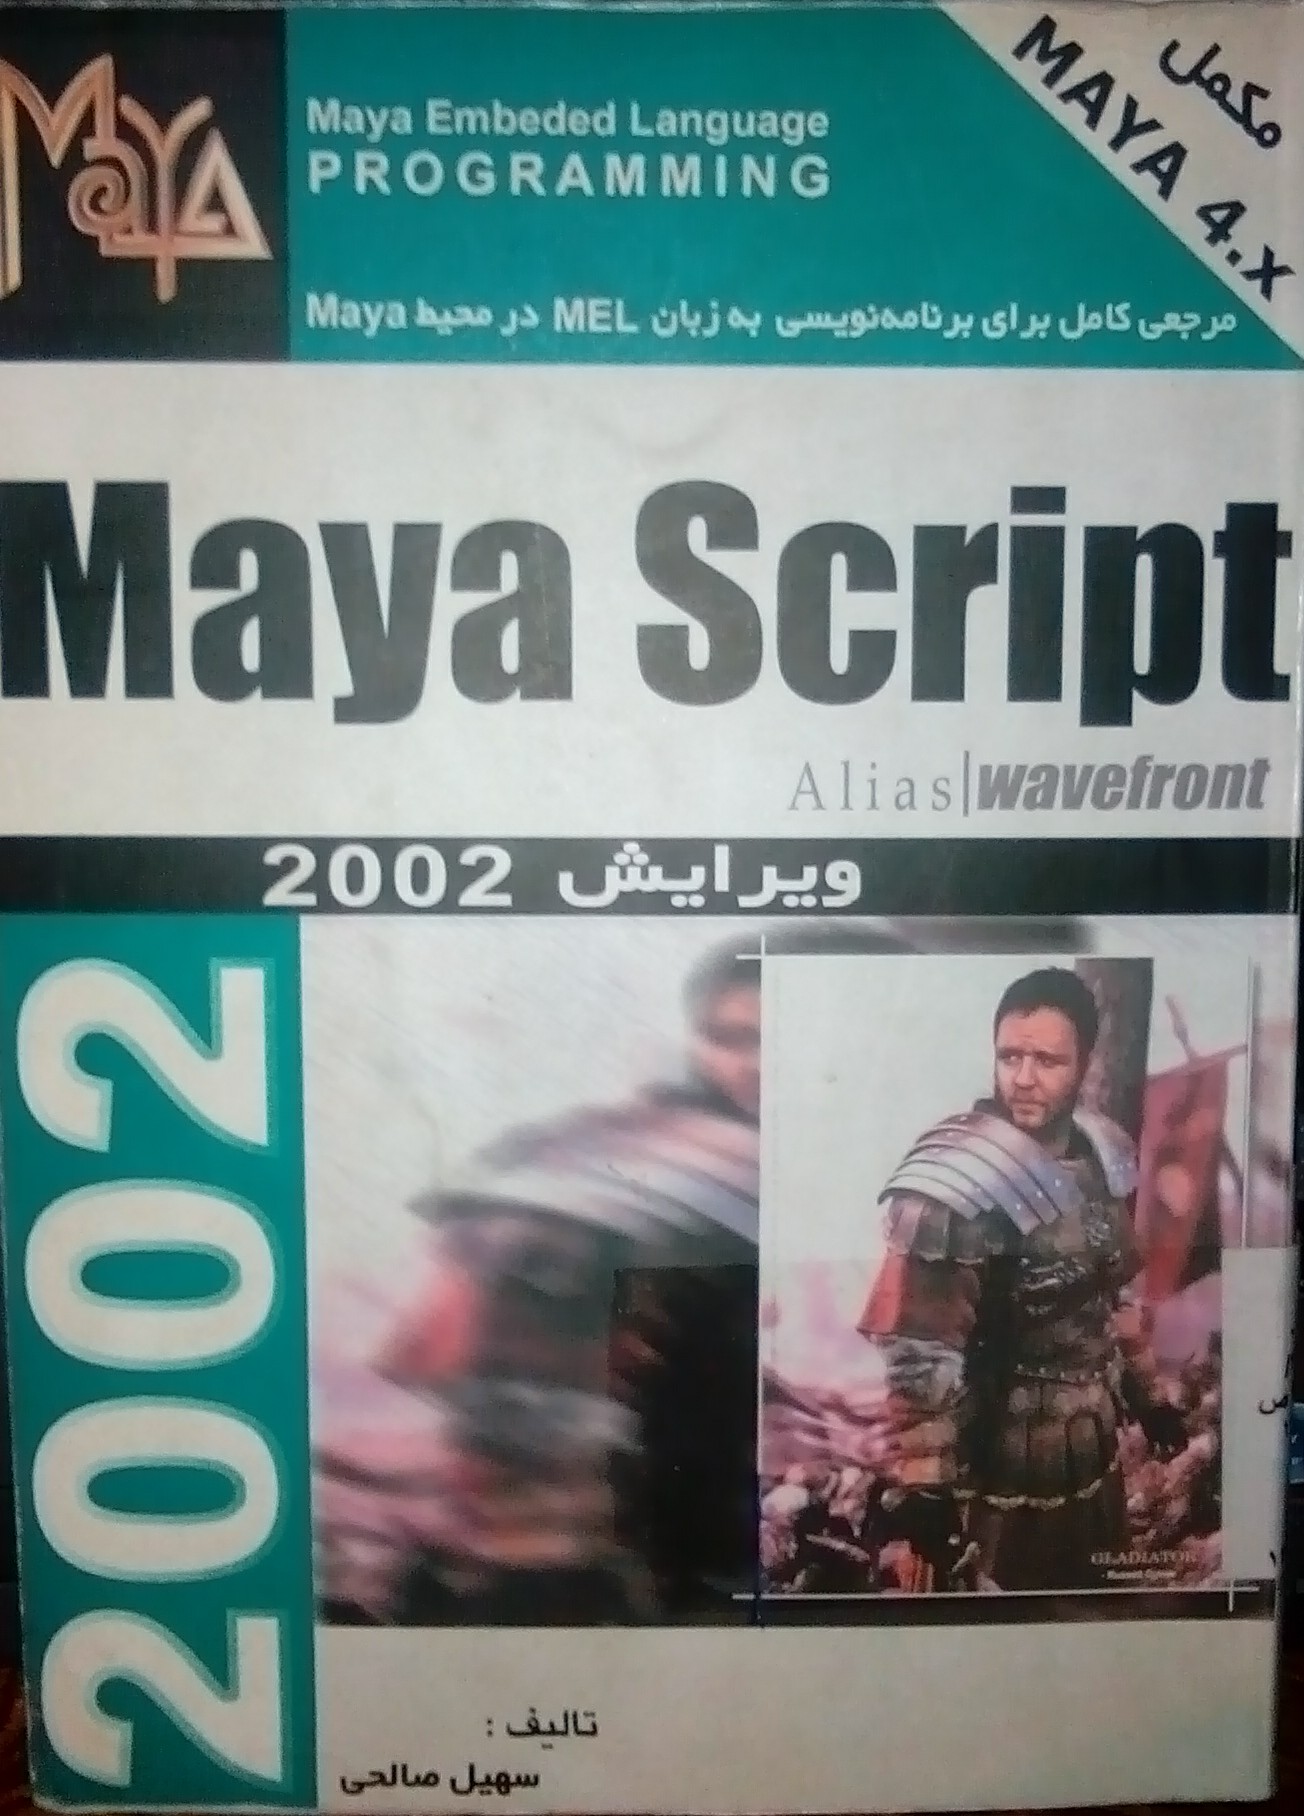  Maya Script 